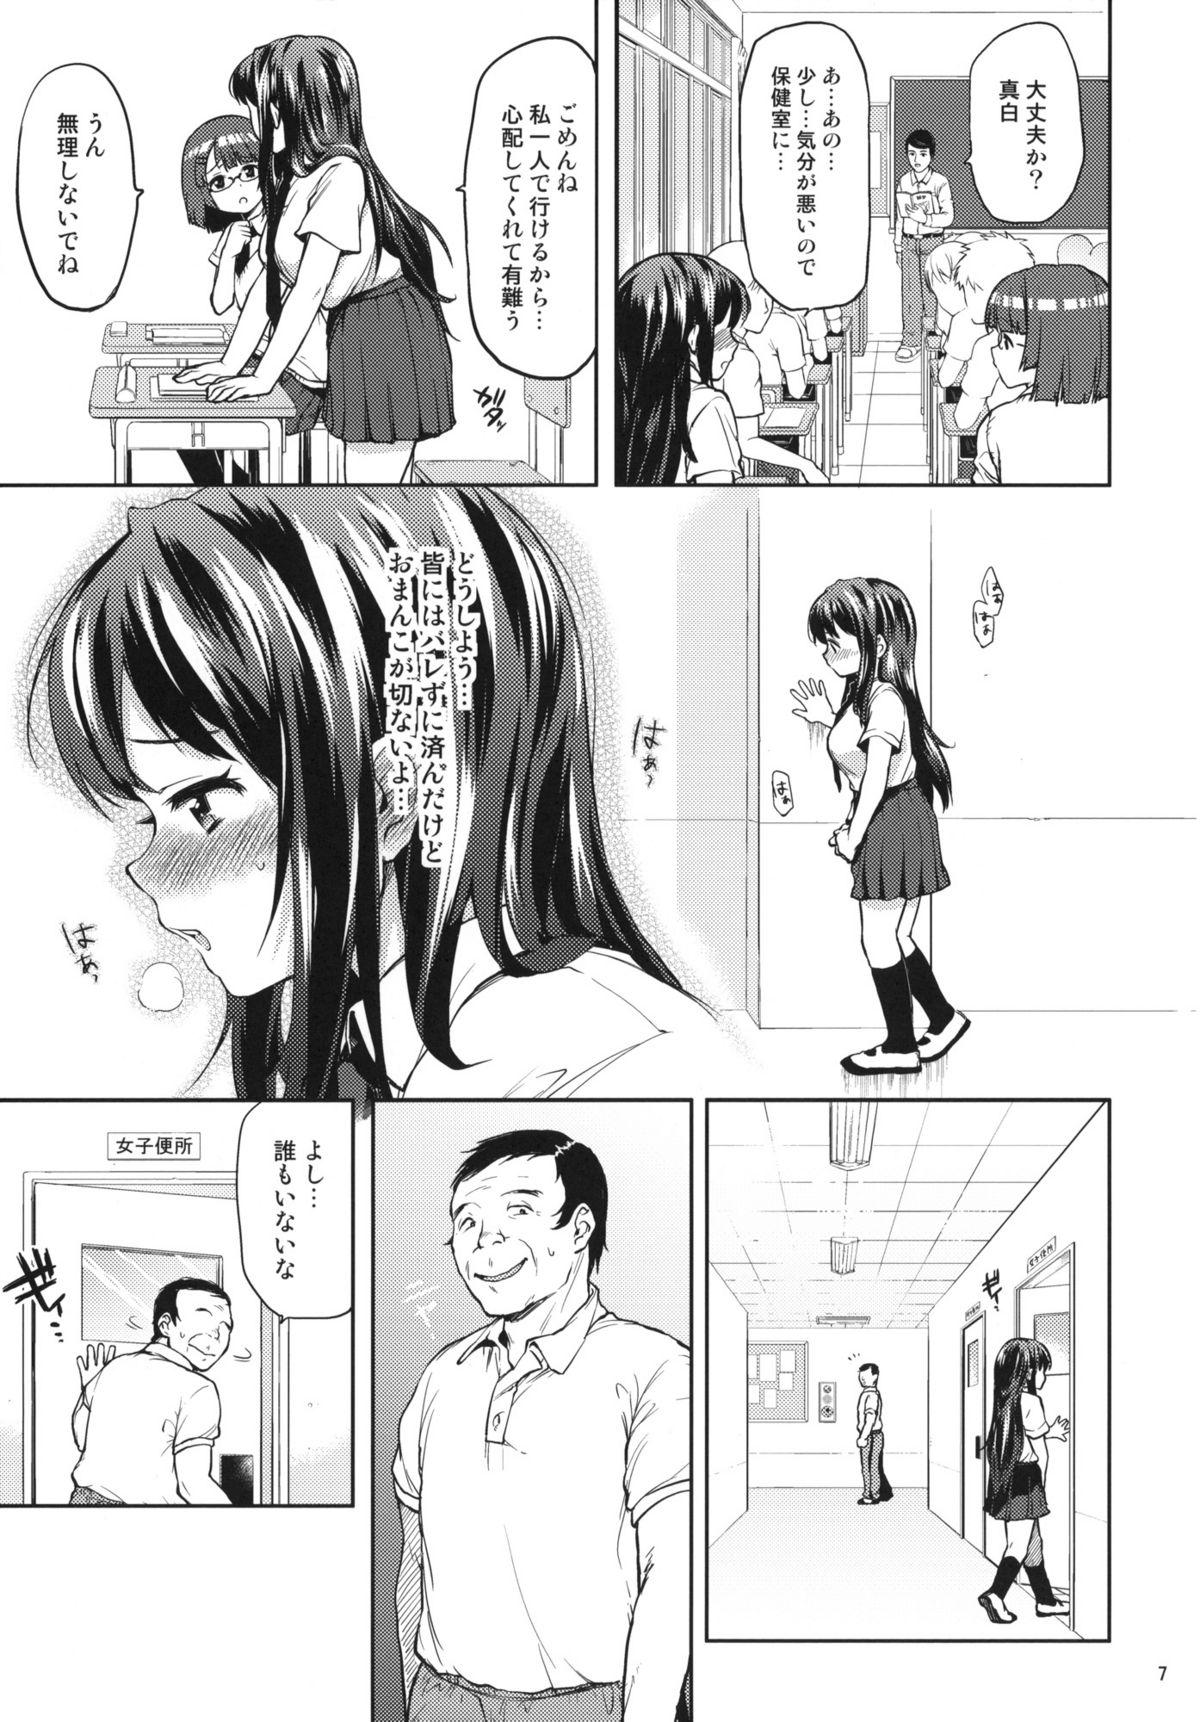 Bucetinha Chii-chan Kaihatsu Nikki 3 Sub - Page 6